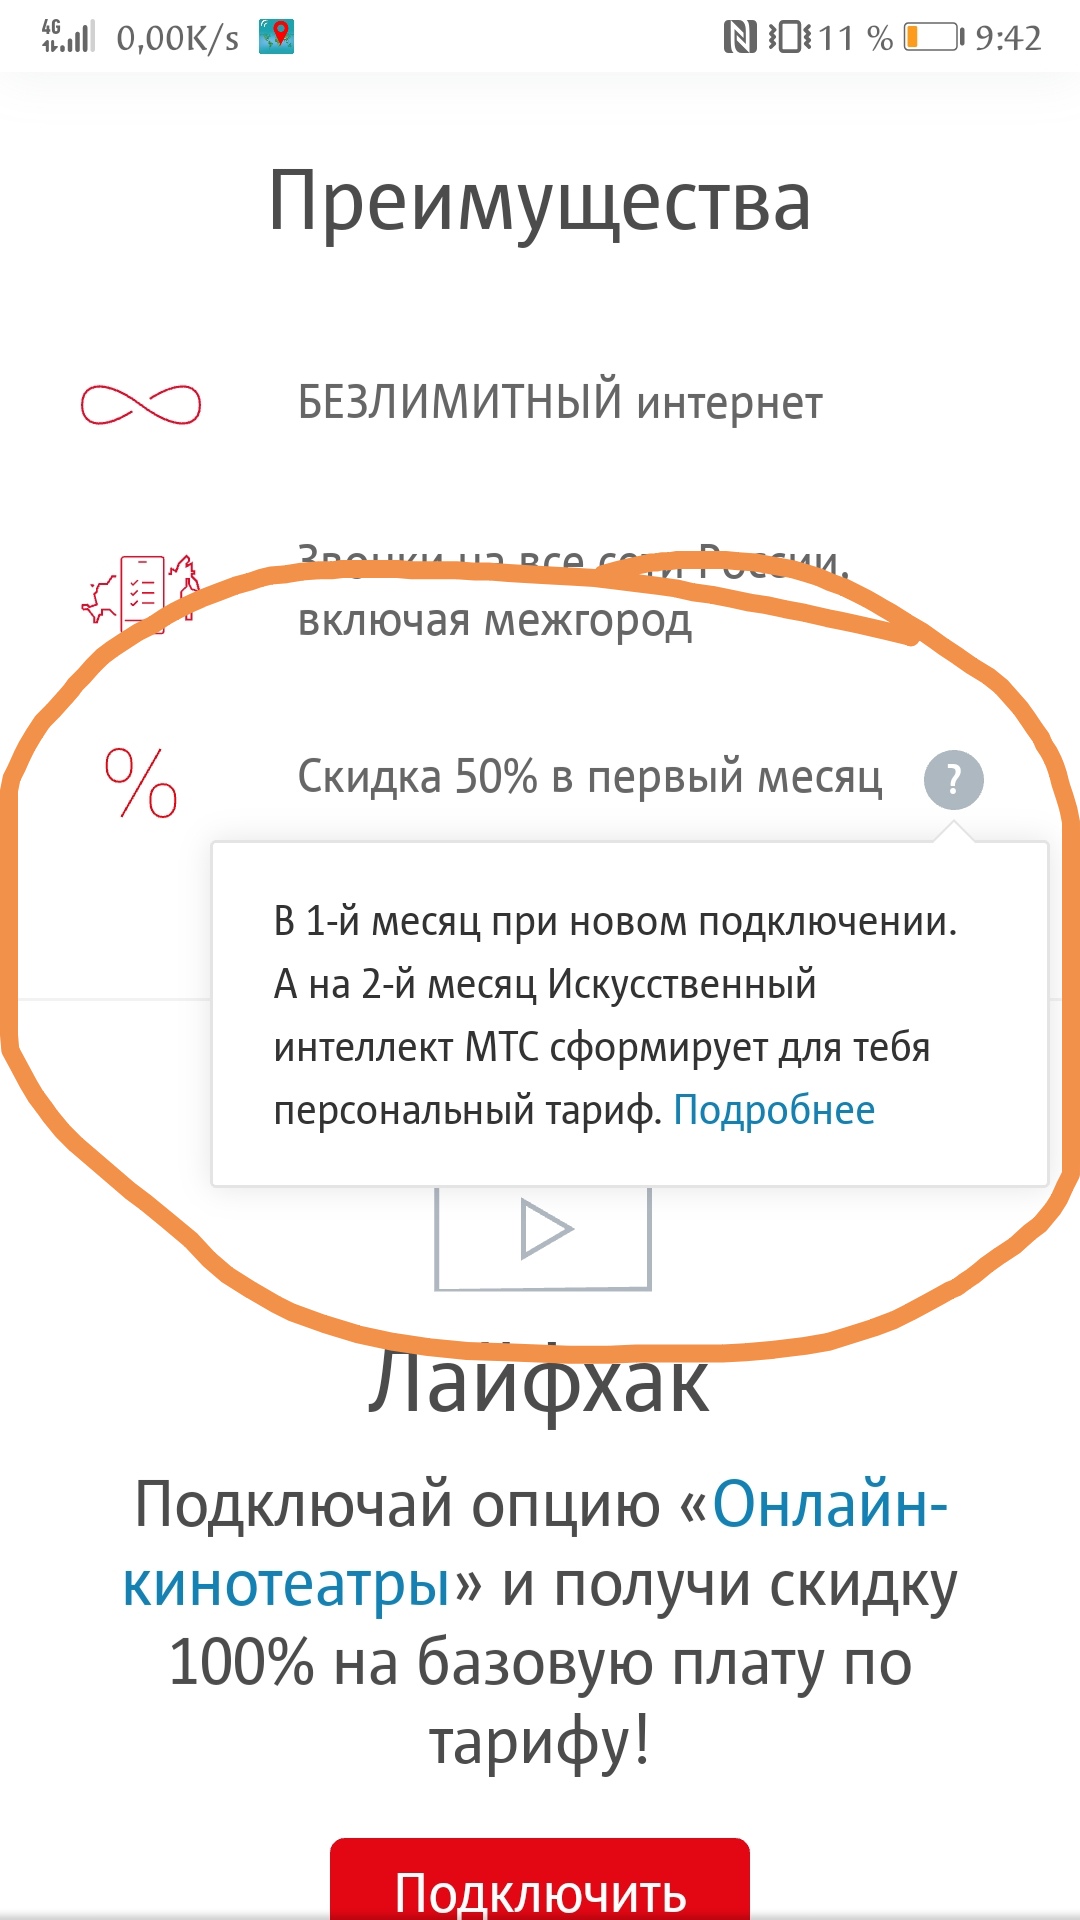 Саяногорск Инфо - screenshot_20200104_094309.jpg, Скачано: 443